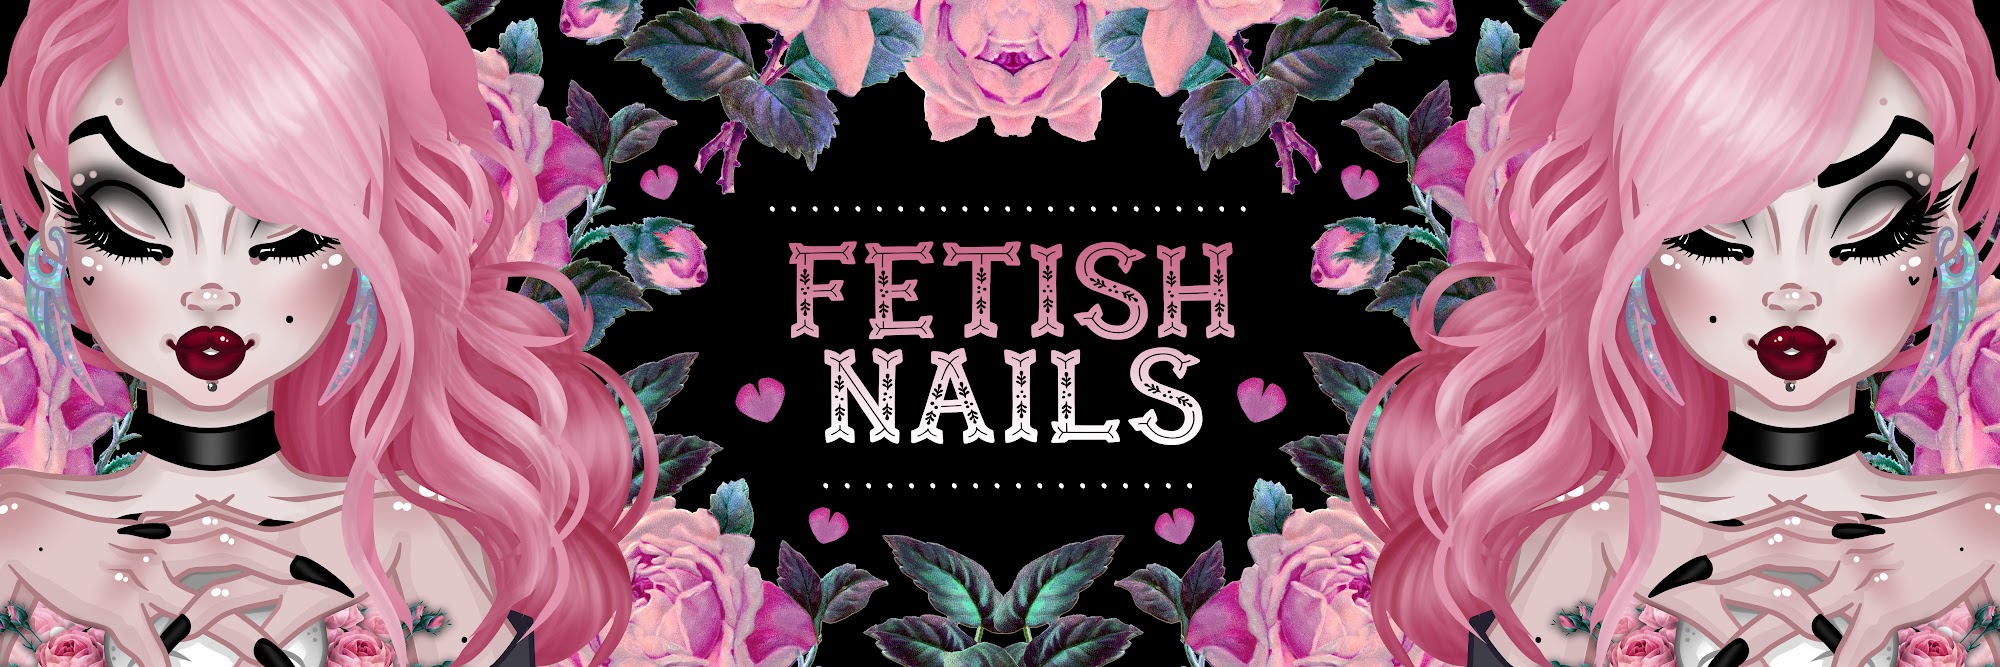 Fetish Nails